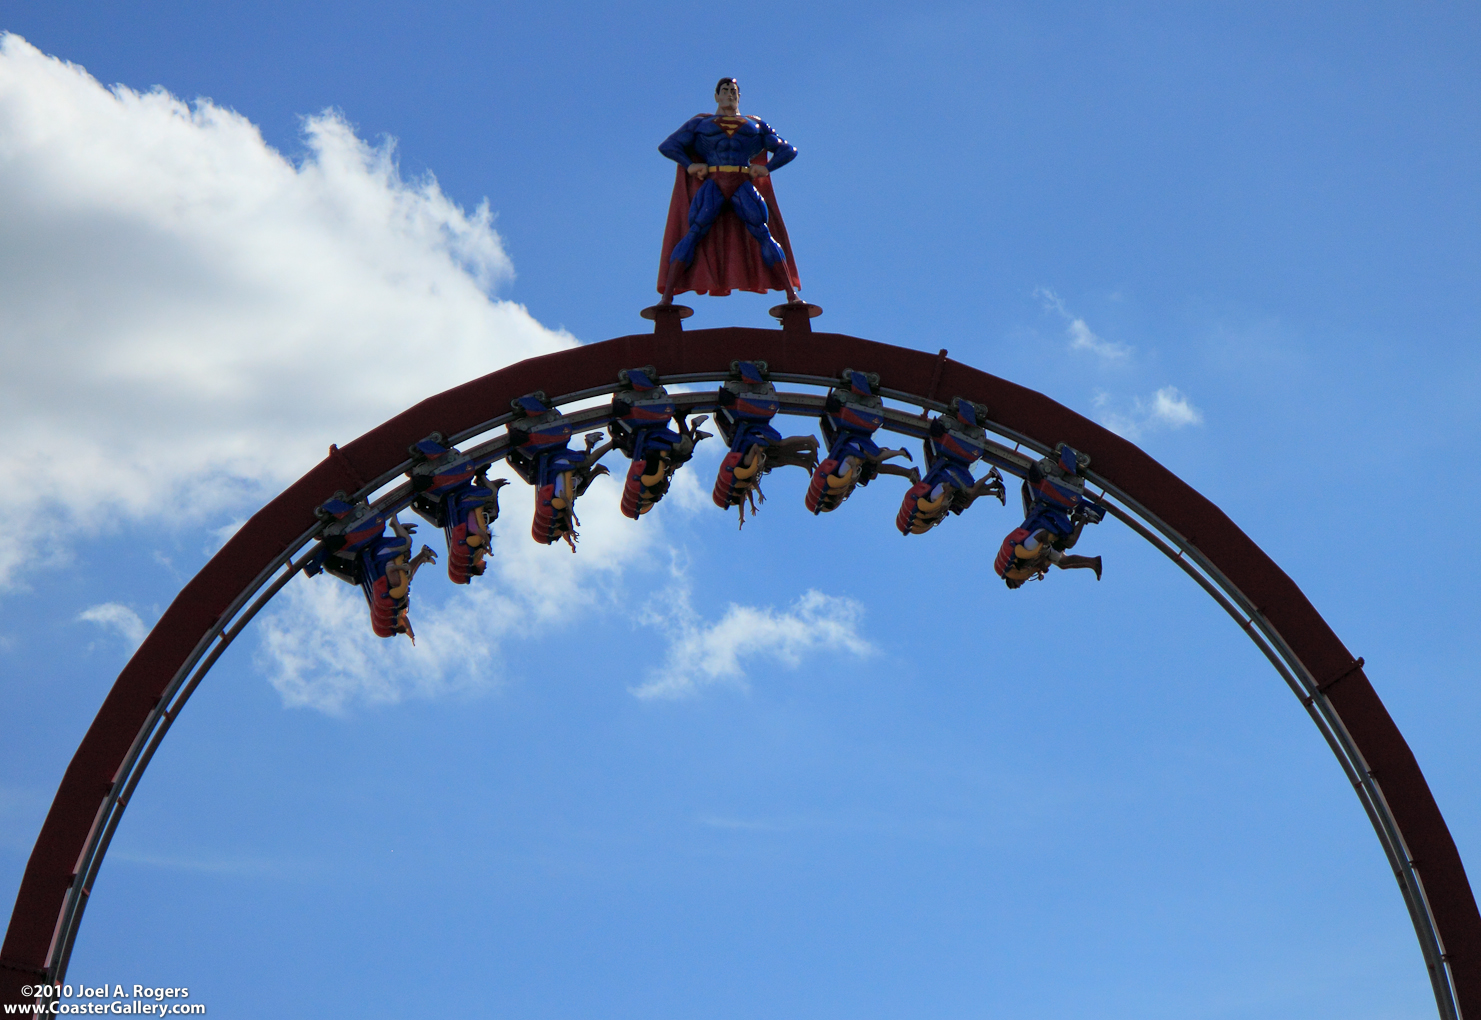 A floorless roller coaster going upside-down.